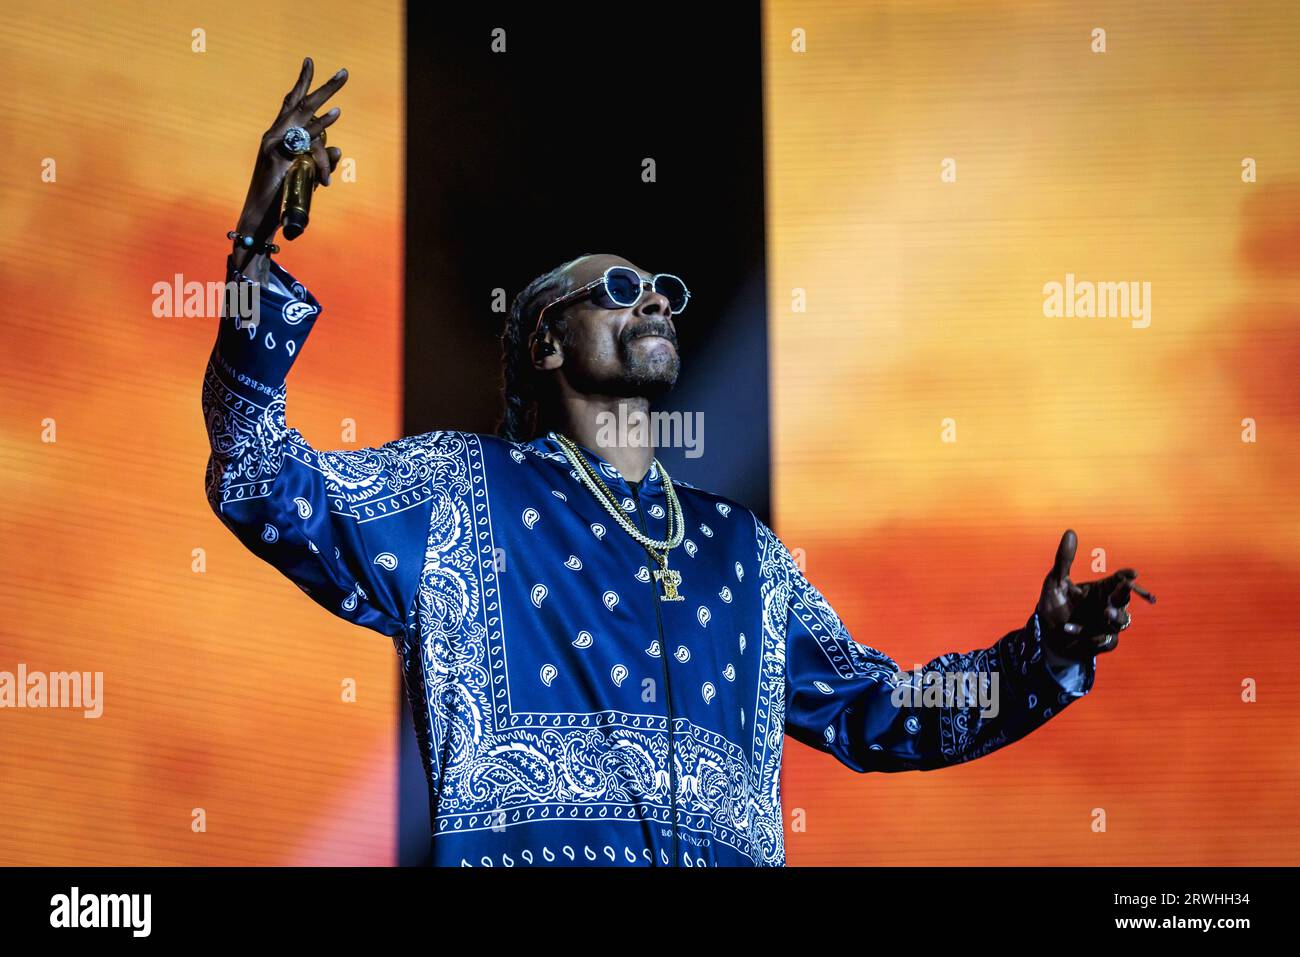 ROTTERDAM - le rappeur américain Snoop Dogg lors d'une performance à Rotterdam AHOY dans le cadre de sa tournée d'automne à travers l'Europe. ANP MARCEL KRIJGSMAN netherlands Out - belgique Out Credit : ANP/Alamy Live News Banque D'Images